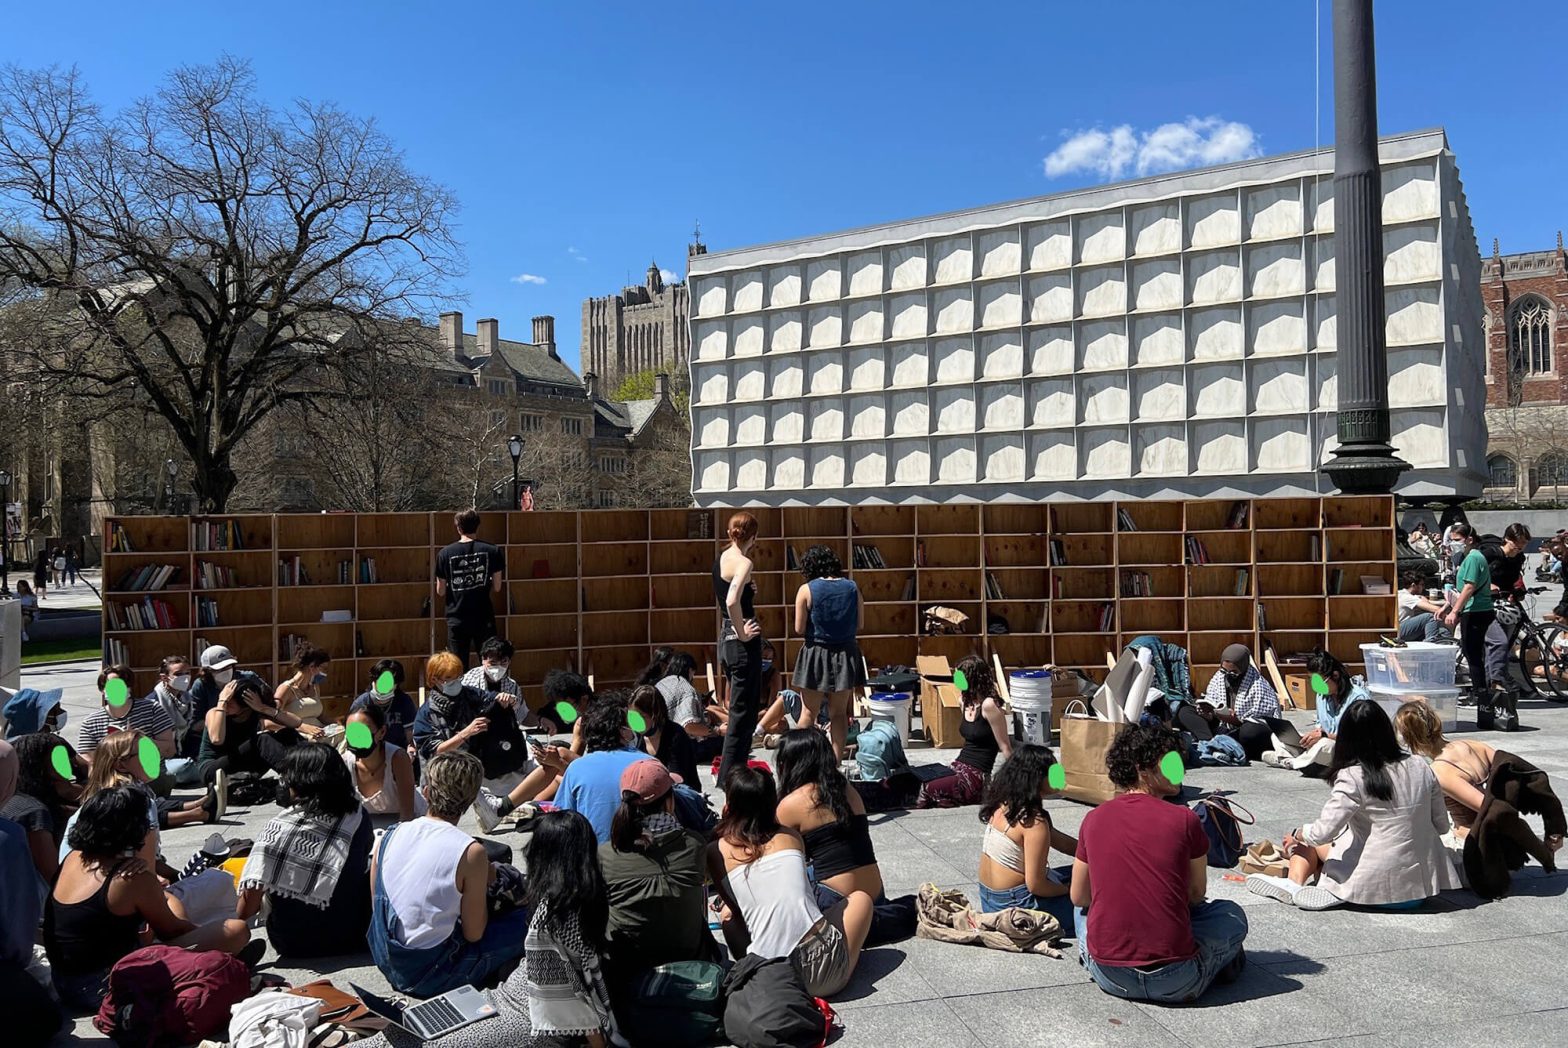 دانشجویان دانشگاه ییل یک کتابخانه موقت برای معترضان طراحی کردند